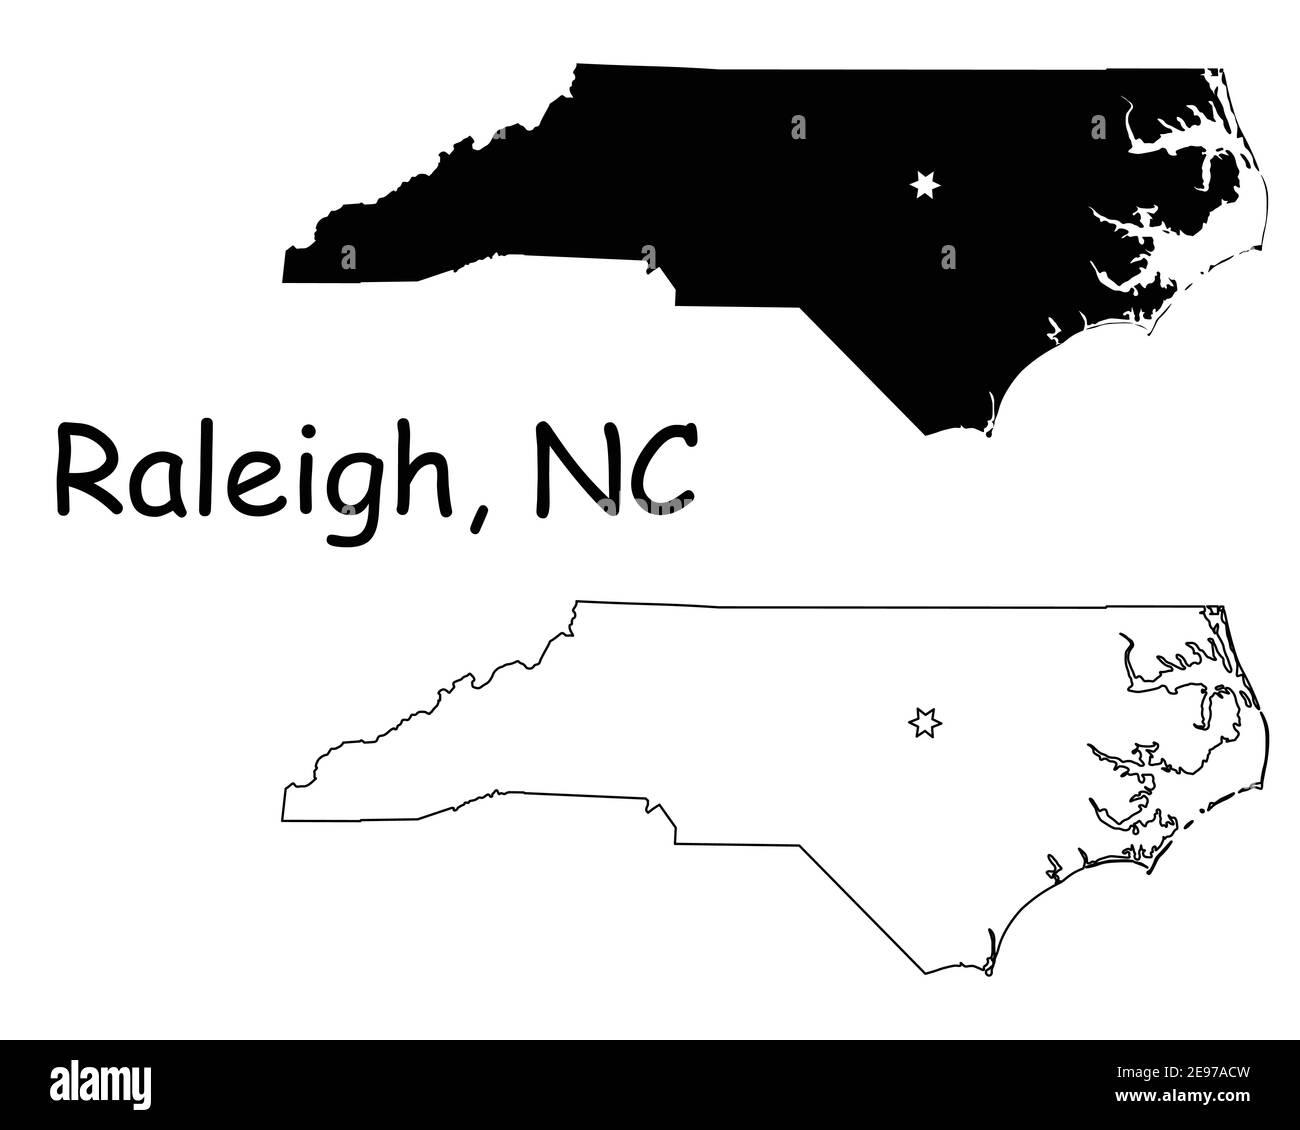 North Carolina North Carolina North Carolina North Carolina North Carolina state Map USA con Capital City Star a Raleigh. Silhouette nera e profilo isolato su sfondo bianco. Vettore EPS Illustrazione Vettoriale